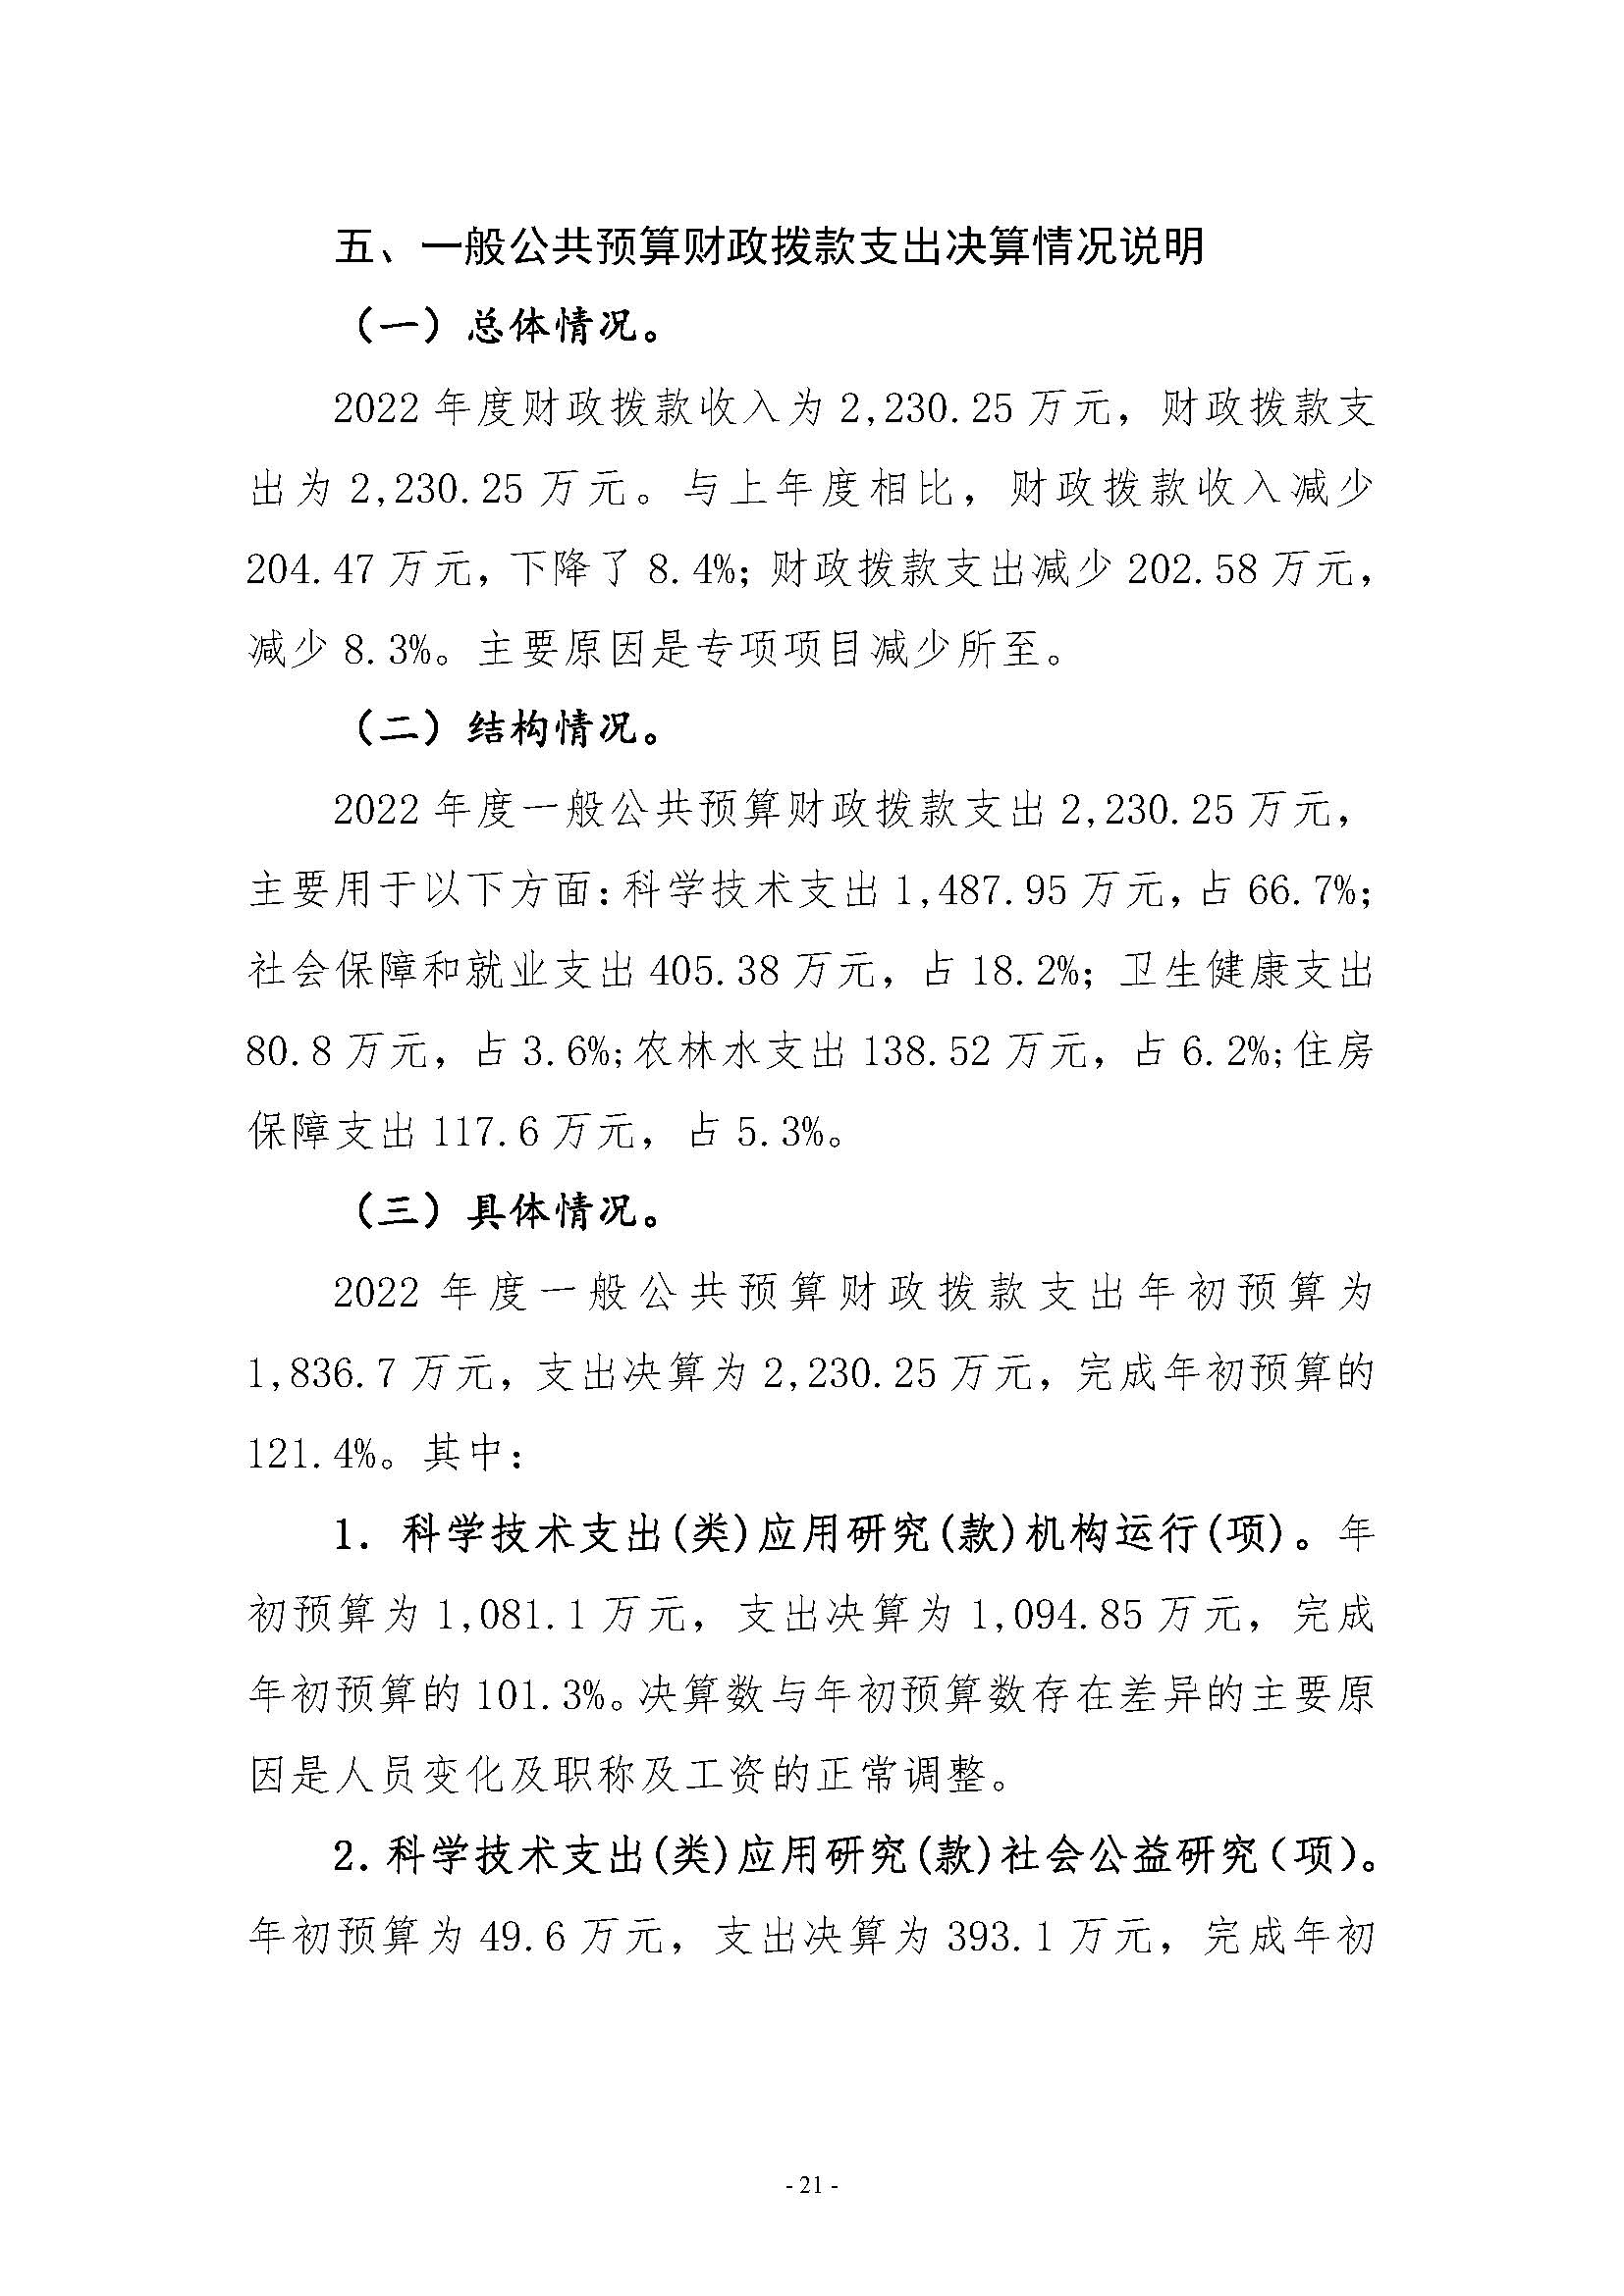 河南省水利科学研究院2022年年度省直部门决算公开(2)_页面_21.jpg